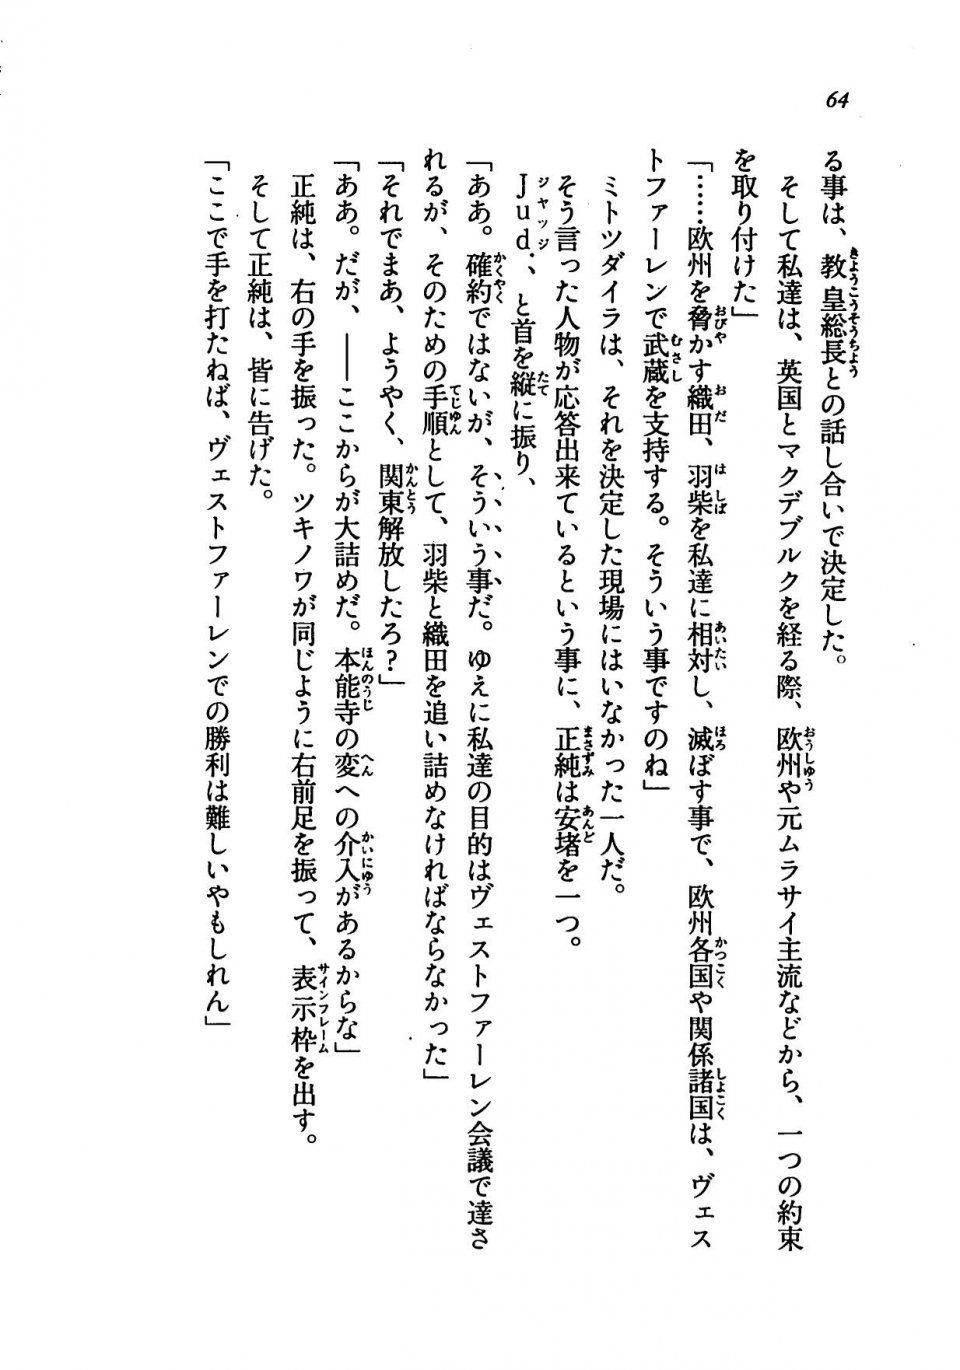 Kyoukai Senjou no Horizon LN Vol 19(8A) - Photo #64